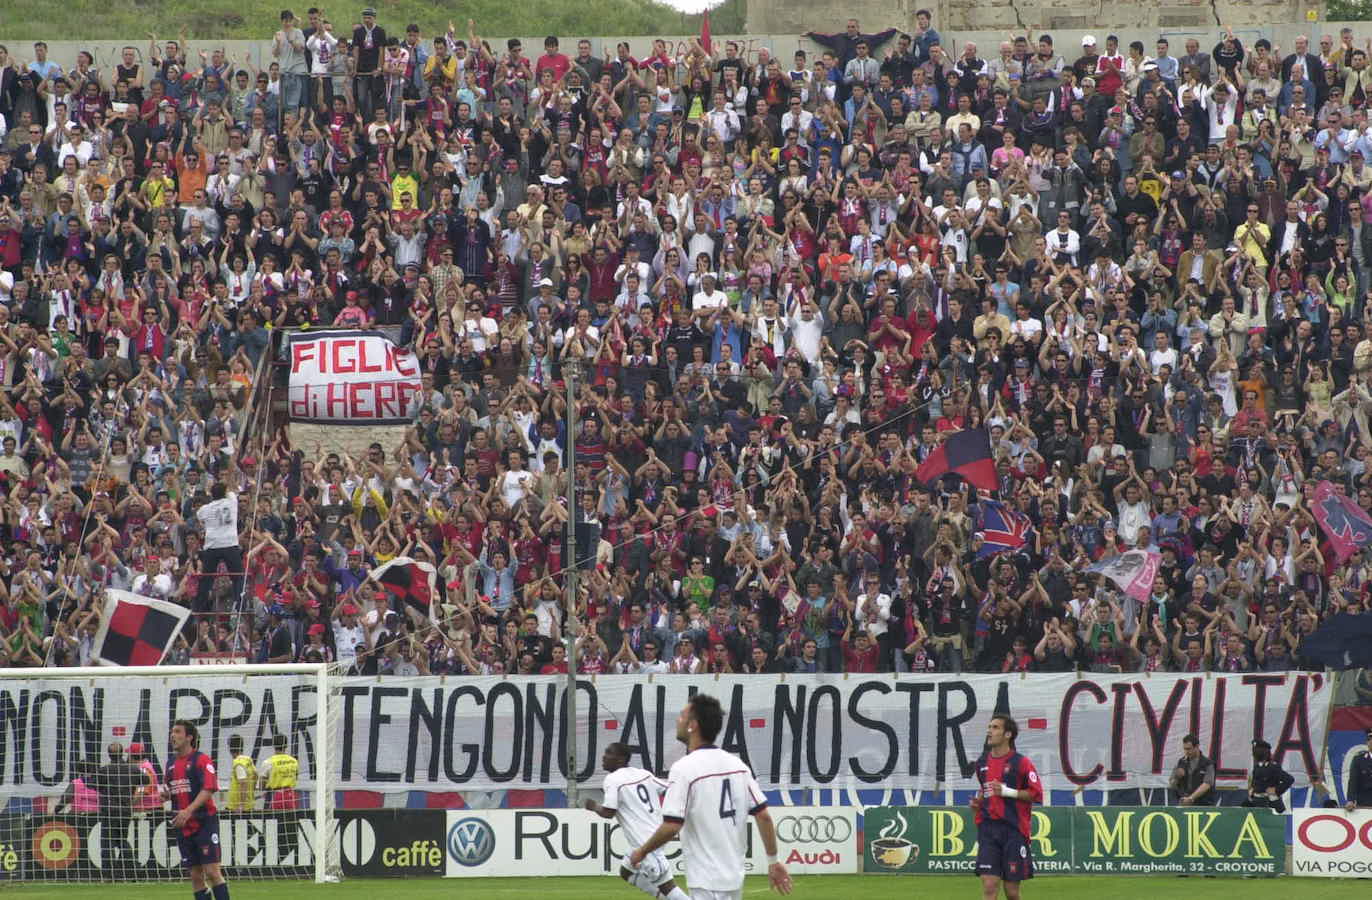 Tifosi Crotone – Serie C 2003-2004 (Archivio Crotone sv Sambenedettese)